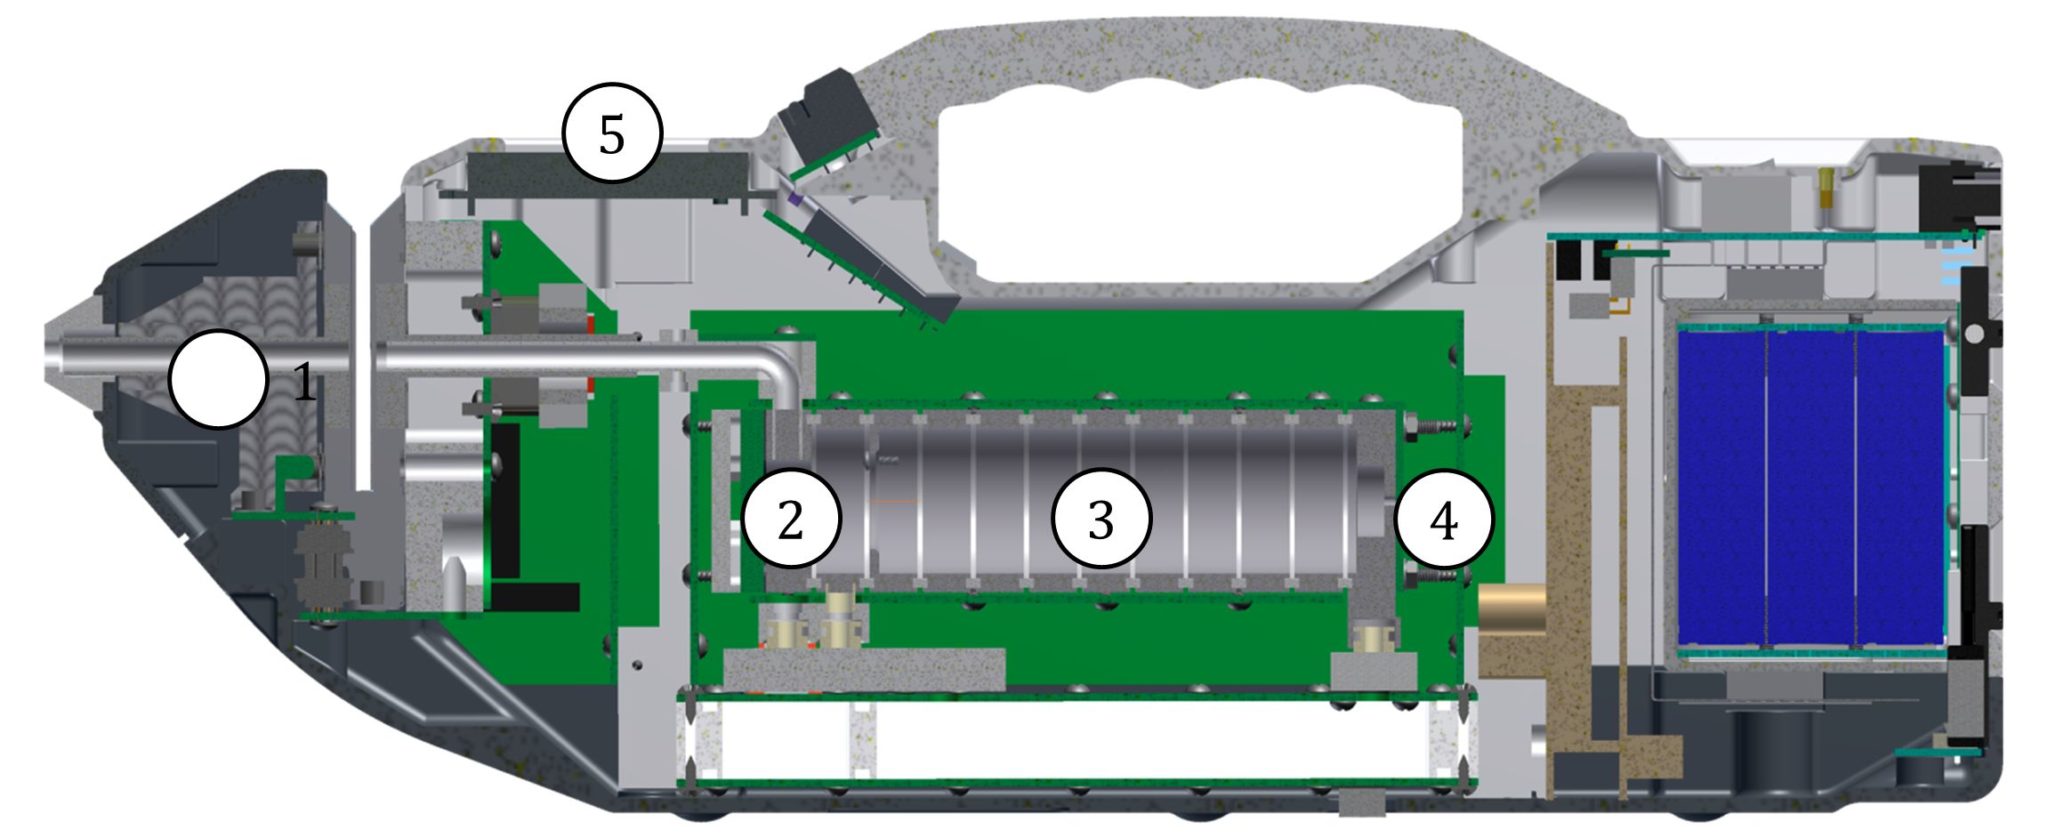 Детектор кербер т. Ионно-дрейфовый детектор Кербер-т. Портативный ионно-дрейфовый детектор Кербер-т. Спектрометр ионной подвижности ИДД Кербер-т. Кербер-т ионно-дрейфовый детектор цена.